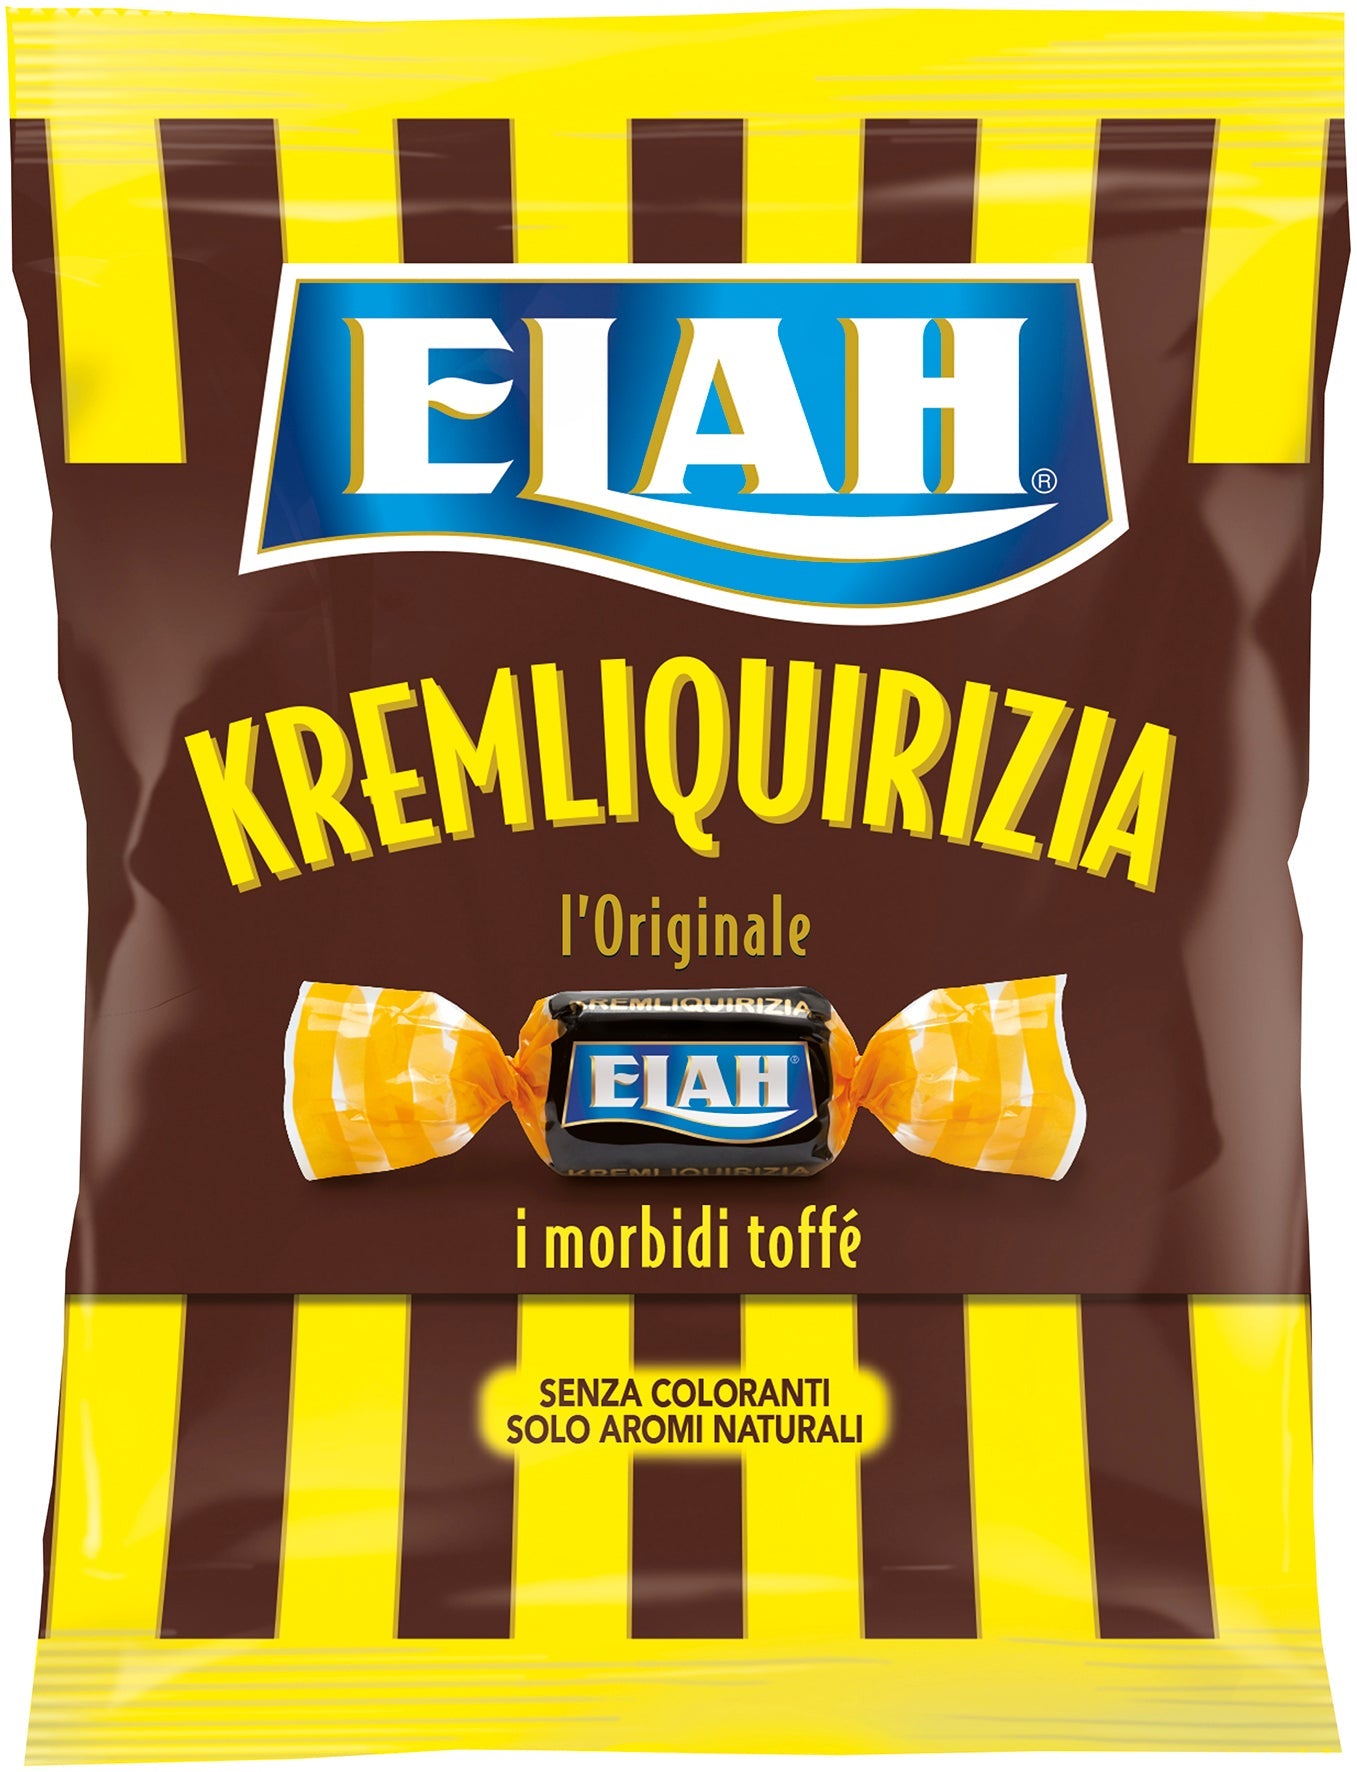 'Kremliquirizia' Licorice & Cream Toffees